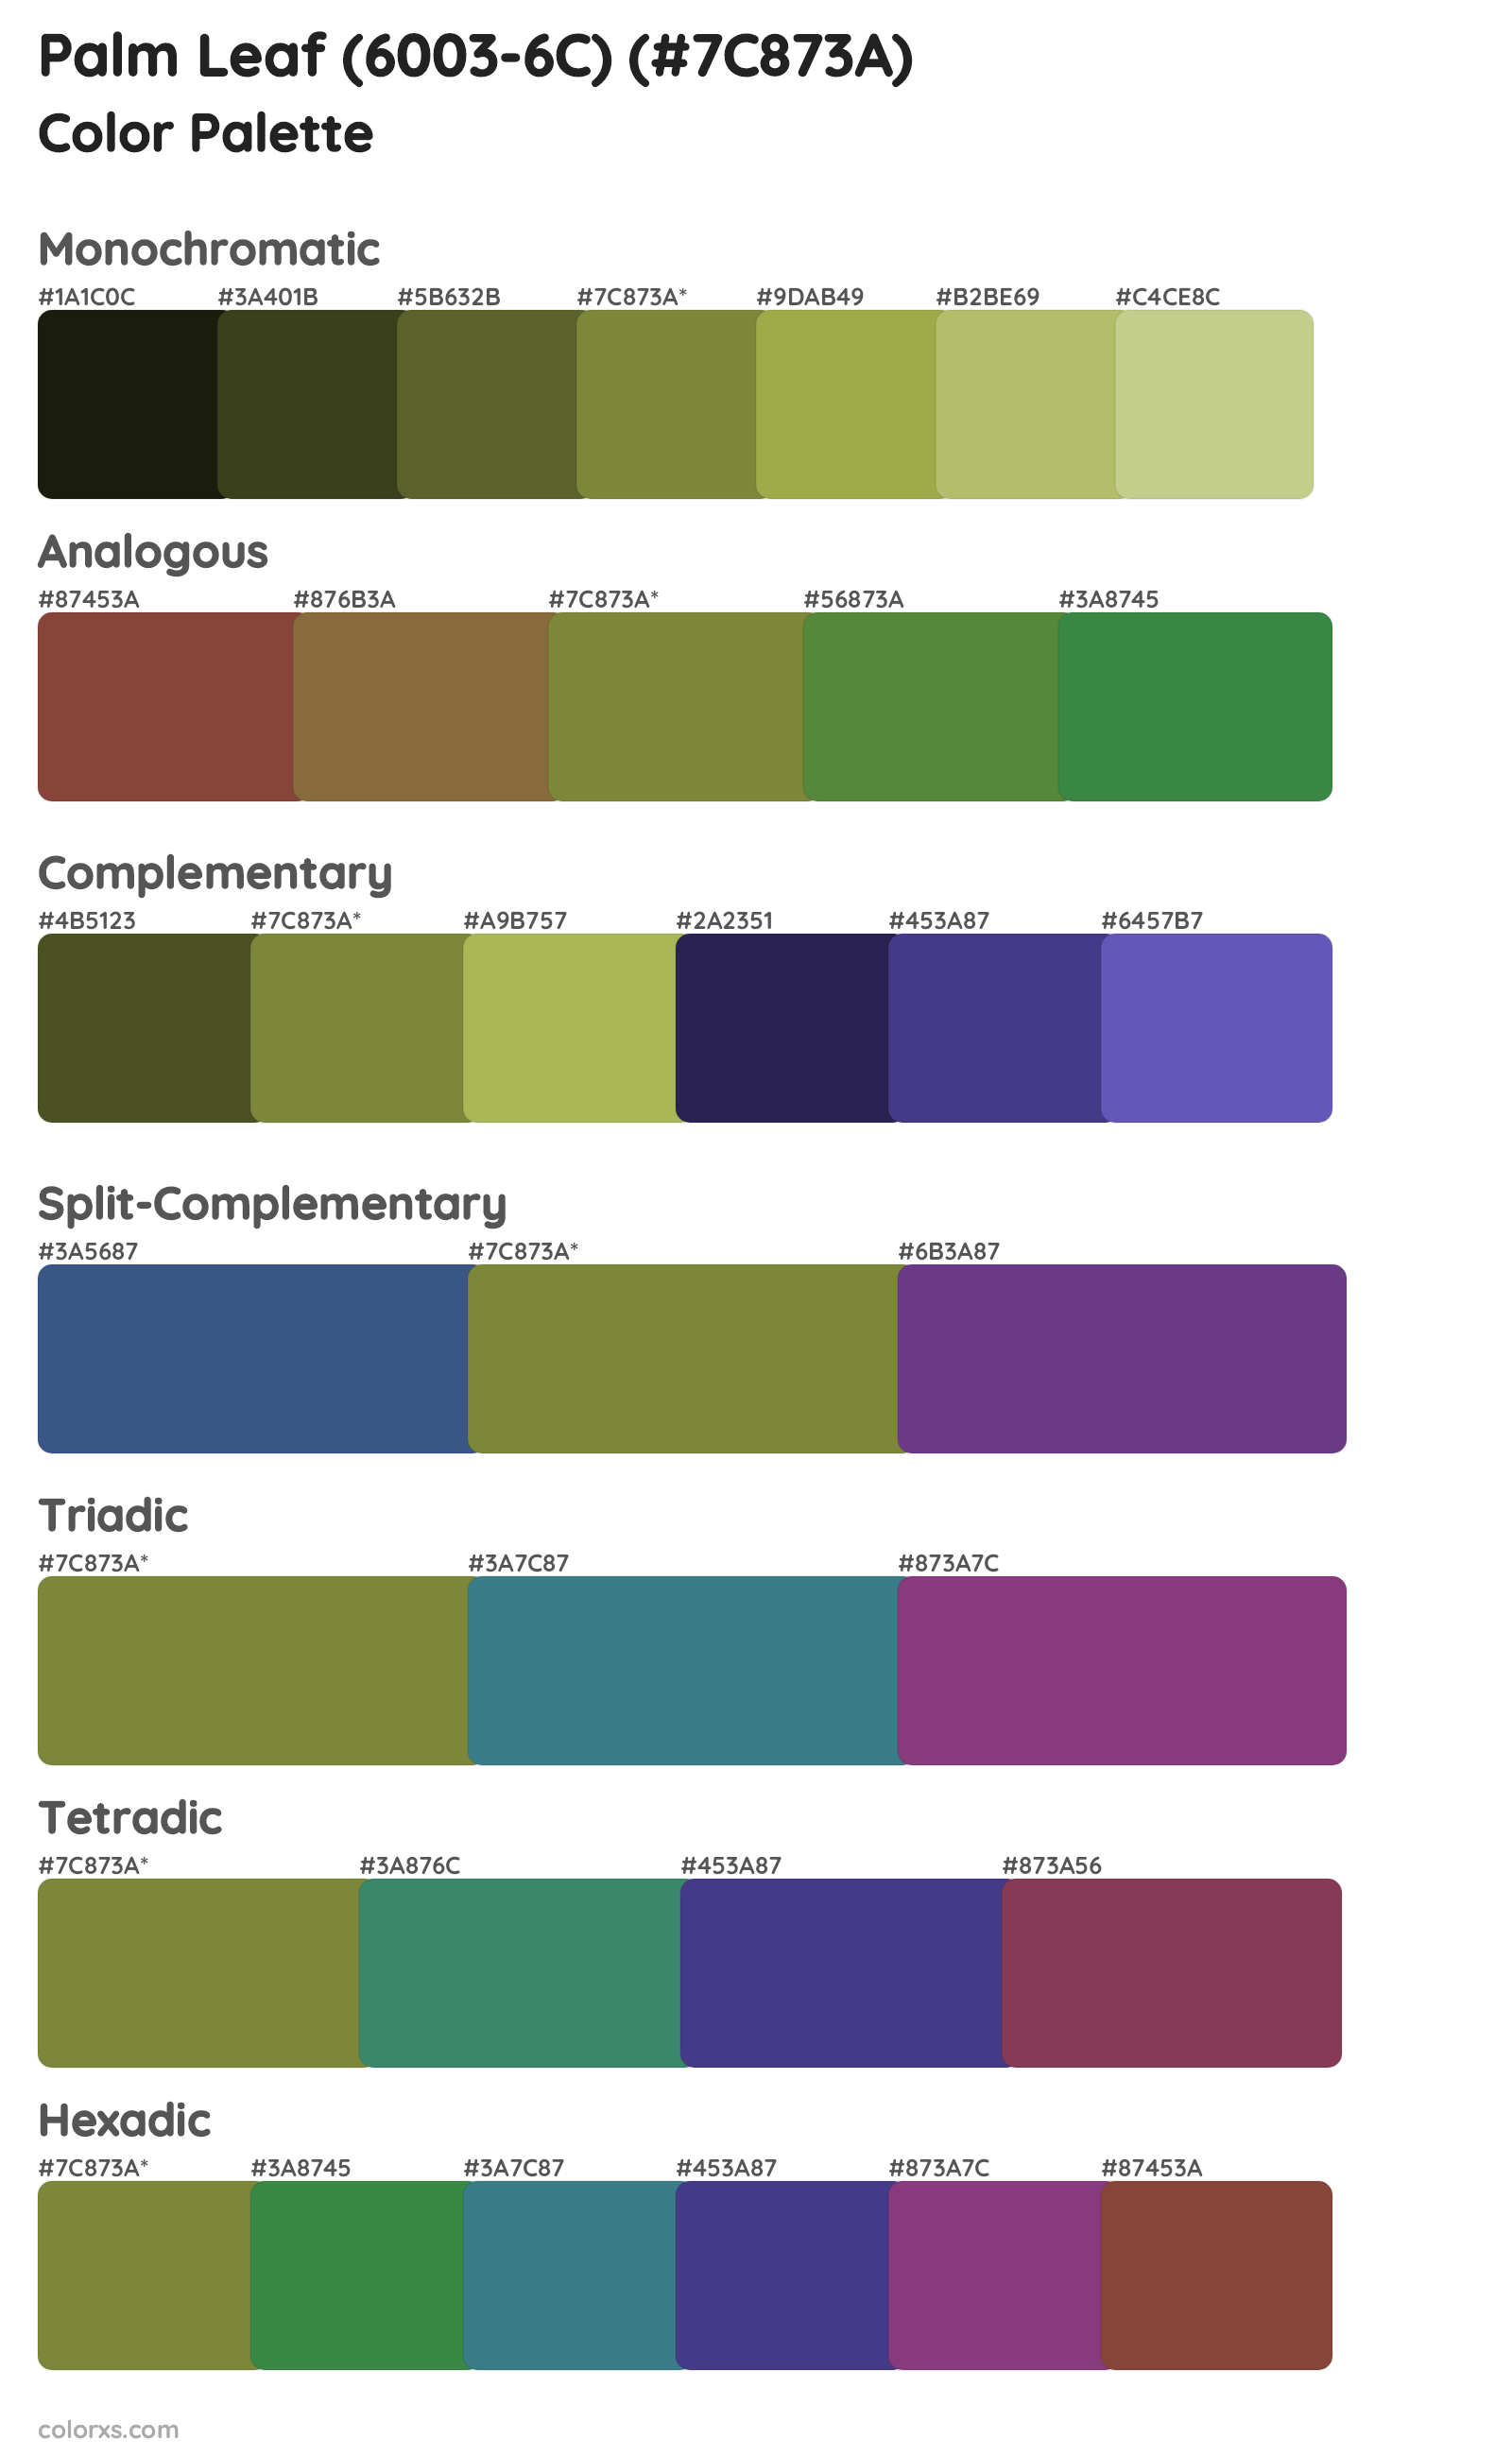 Palm Leaf (6003-6C) Color Scheme Palettes